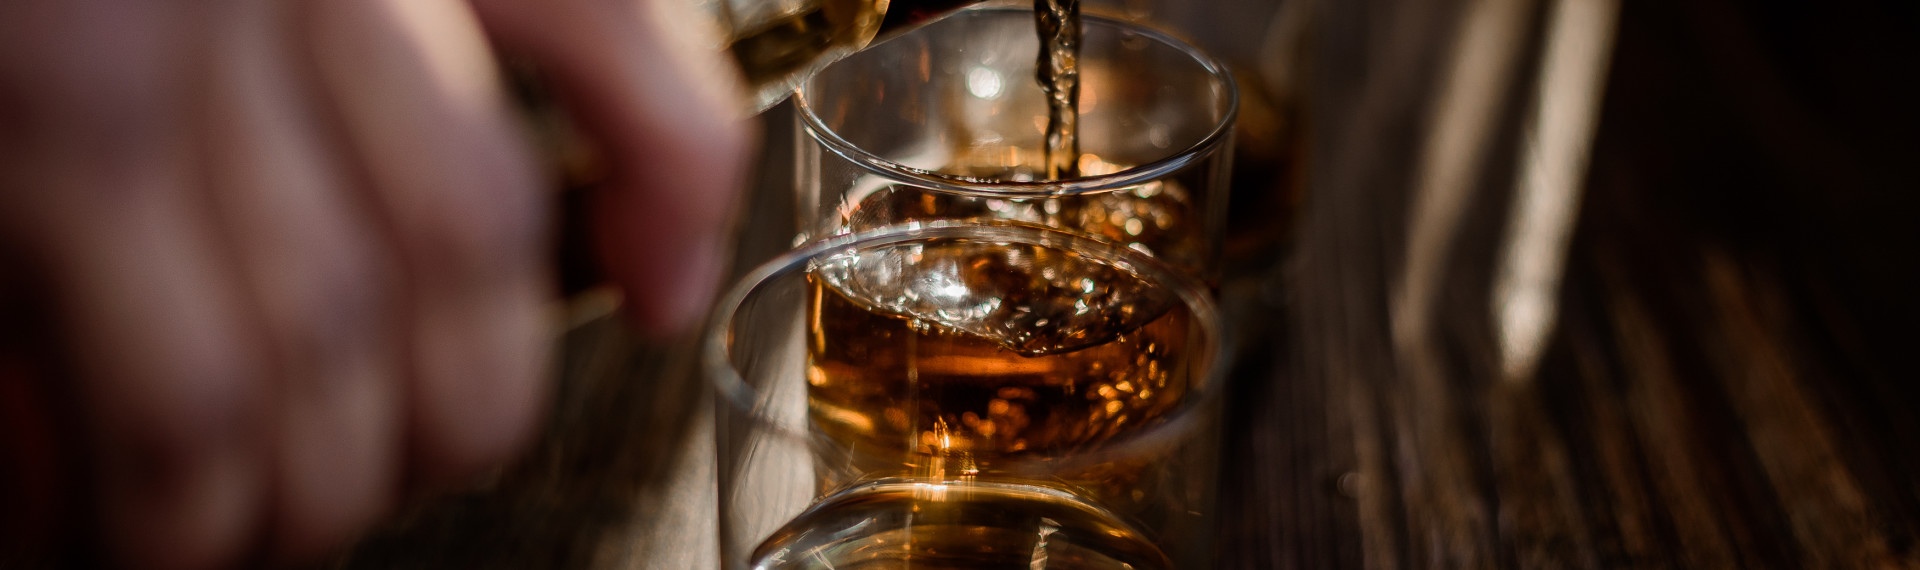 Whisky Tasting Köln | Jetzt mit Pissup Reisen buchen!